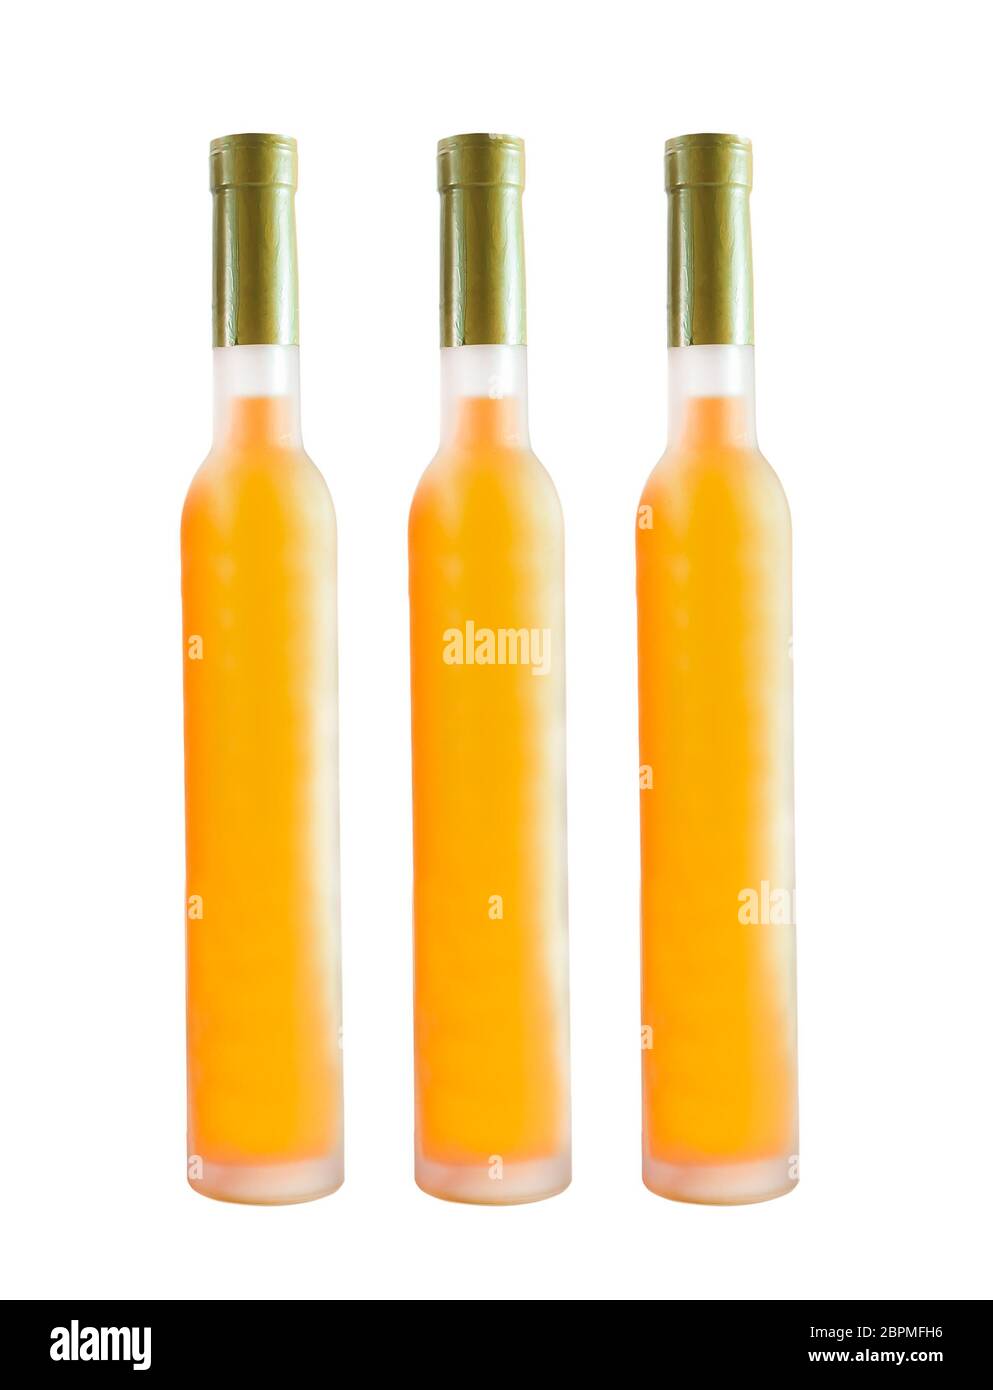 Orange wine bottles isolated on white background Stock Photo